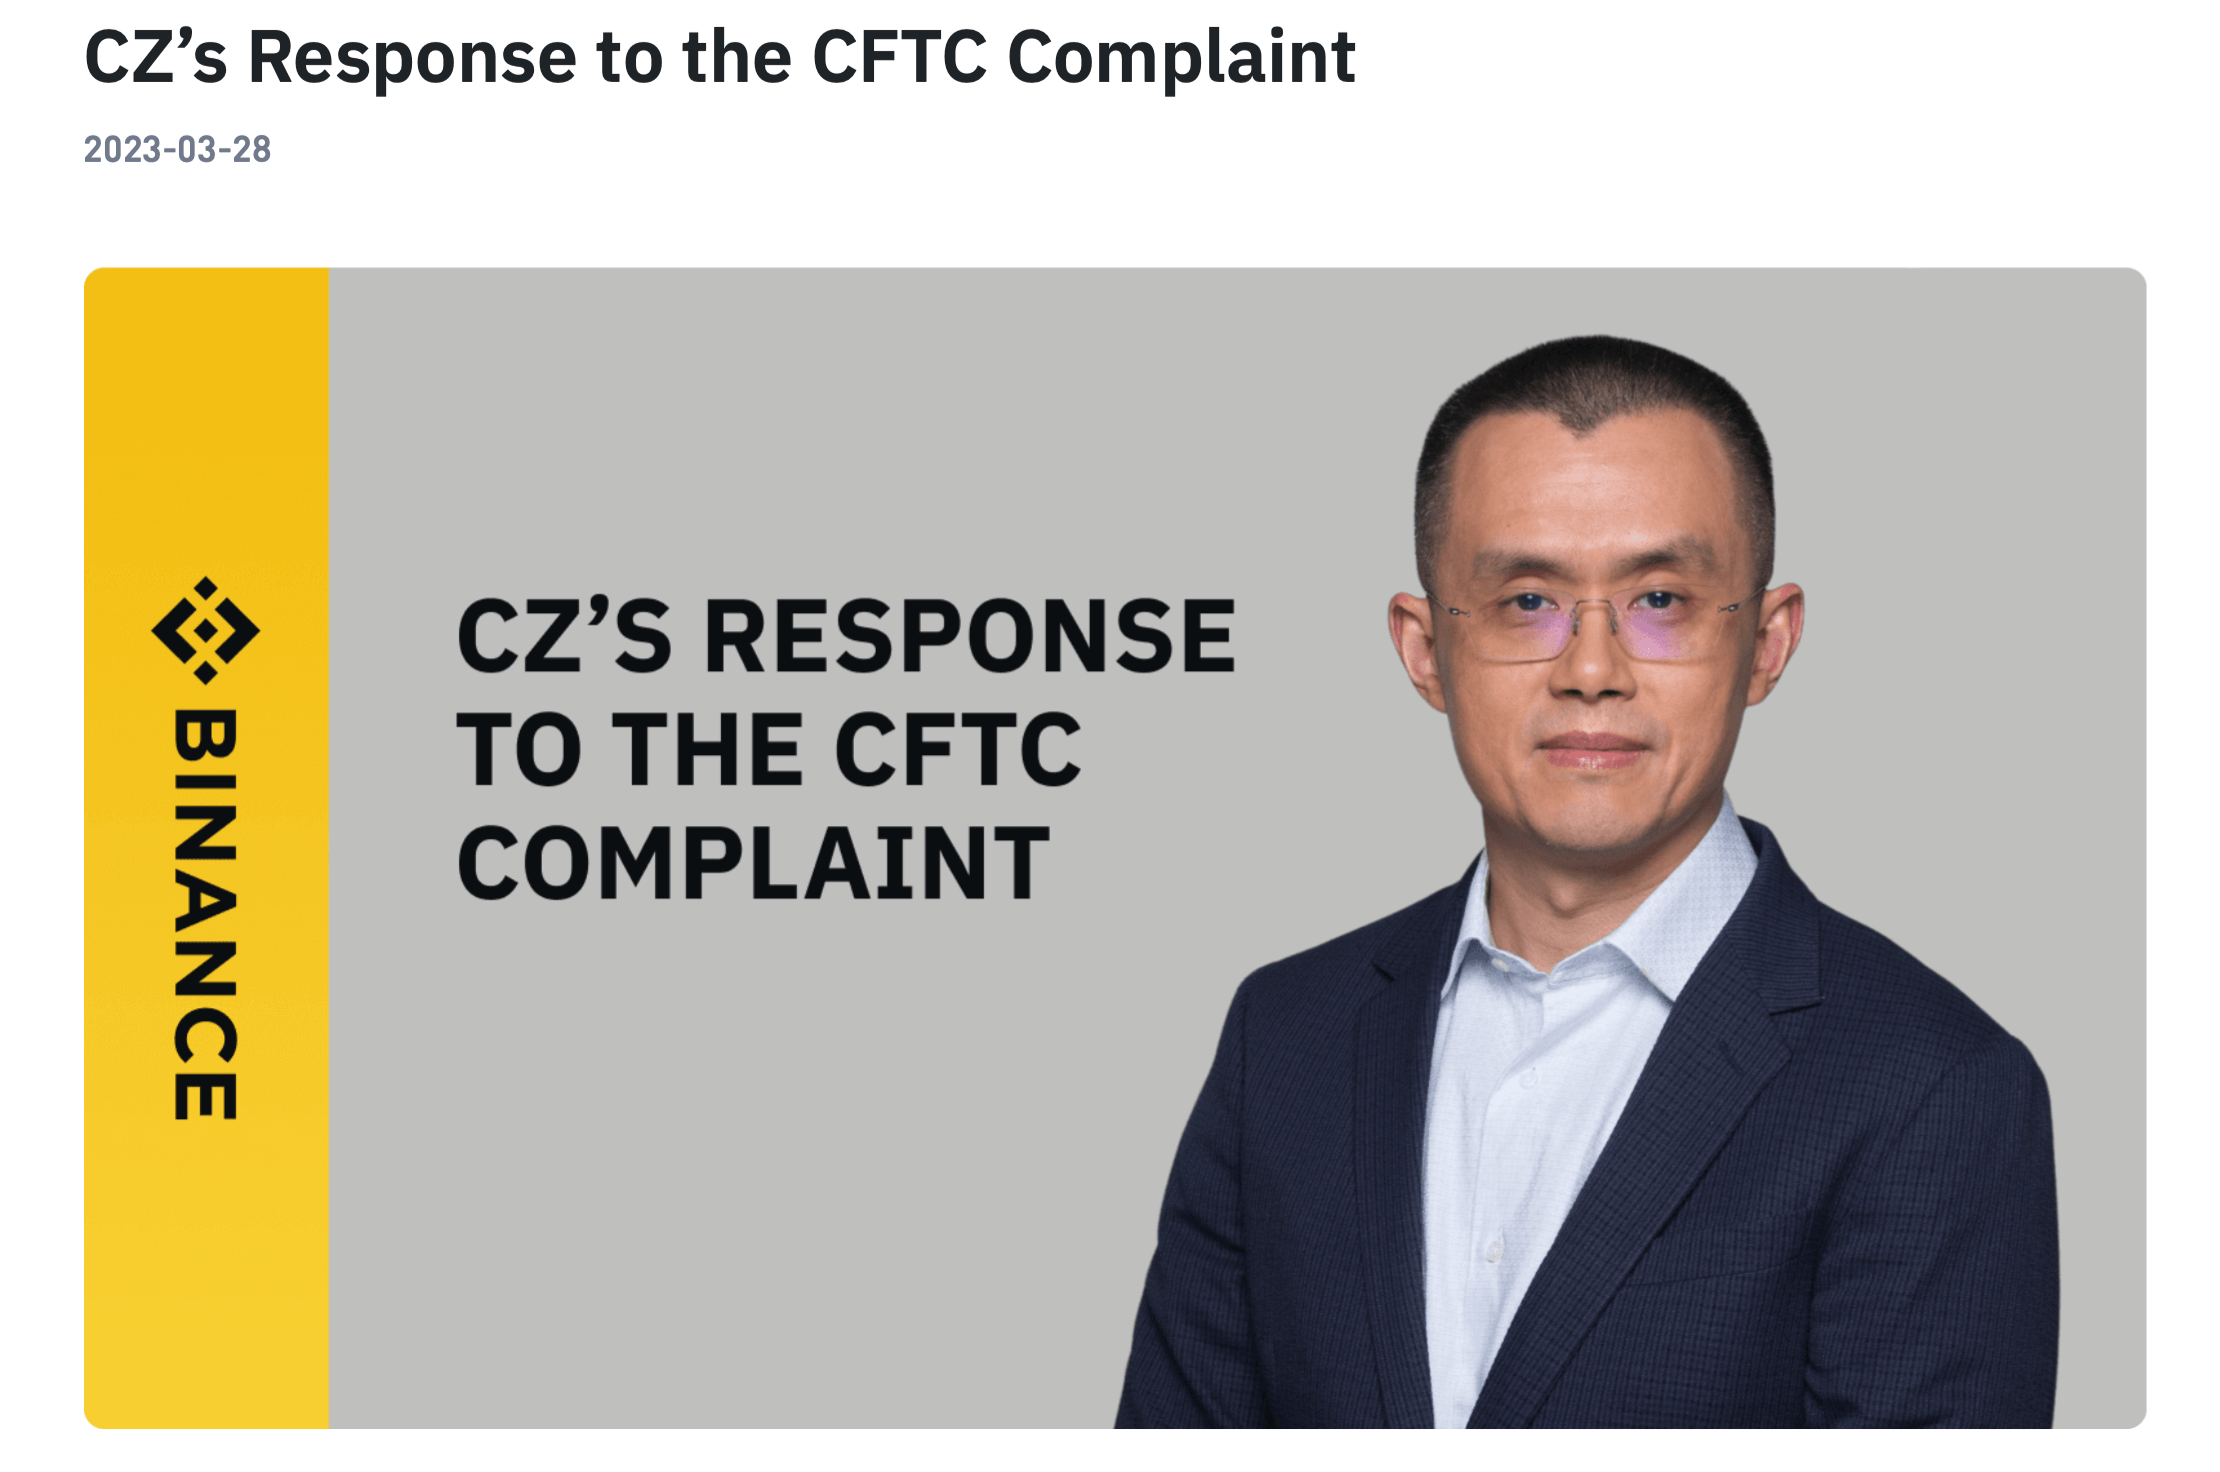 Чем ответил руководитель криптобиржи Binance. Ответ руководителя Binance Чанпена Чжао на иск CFTC. Фото.